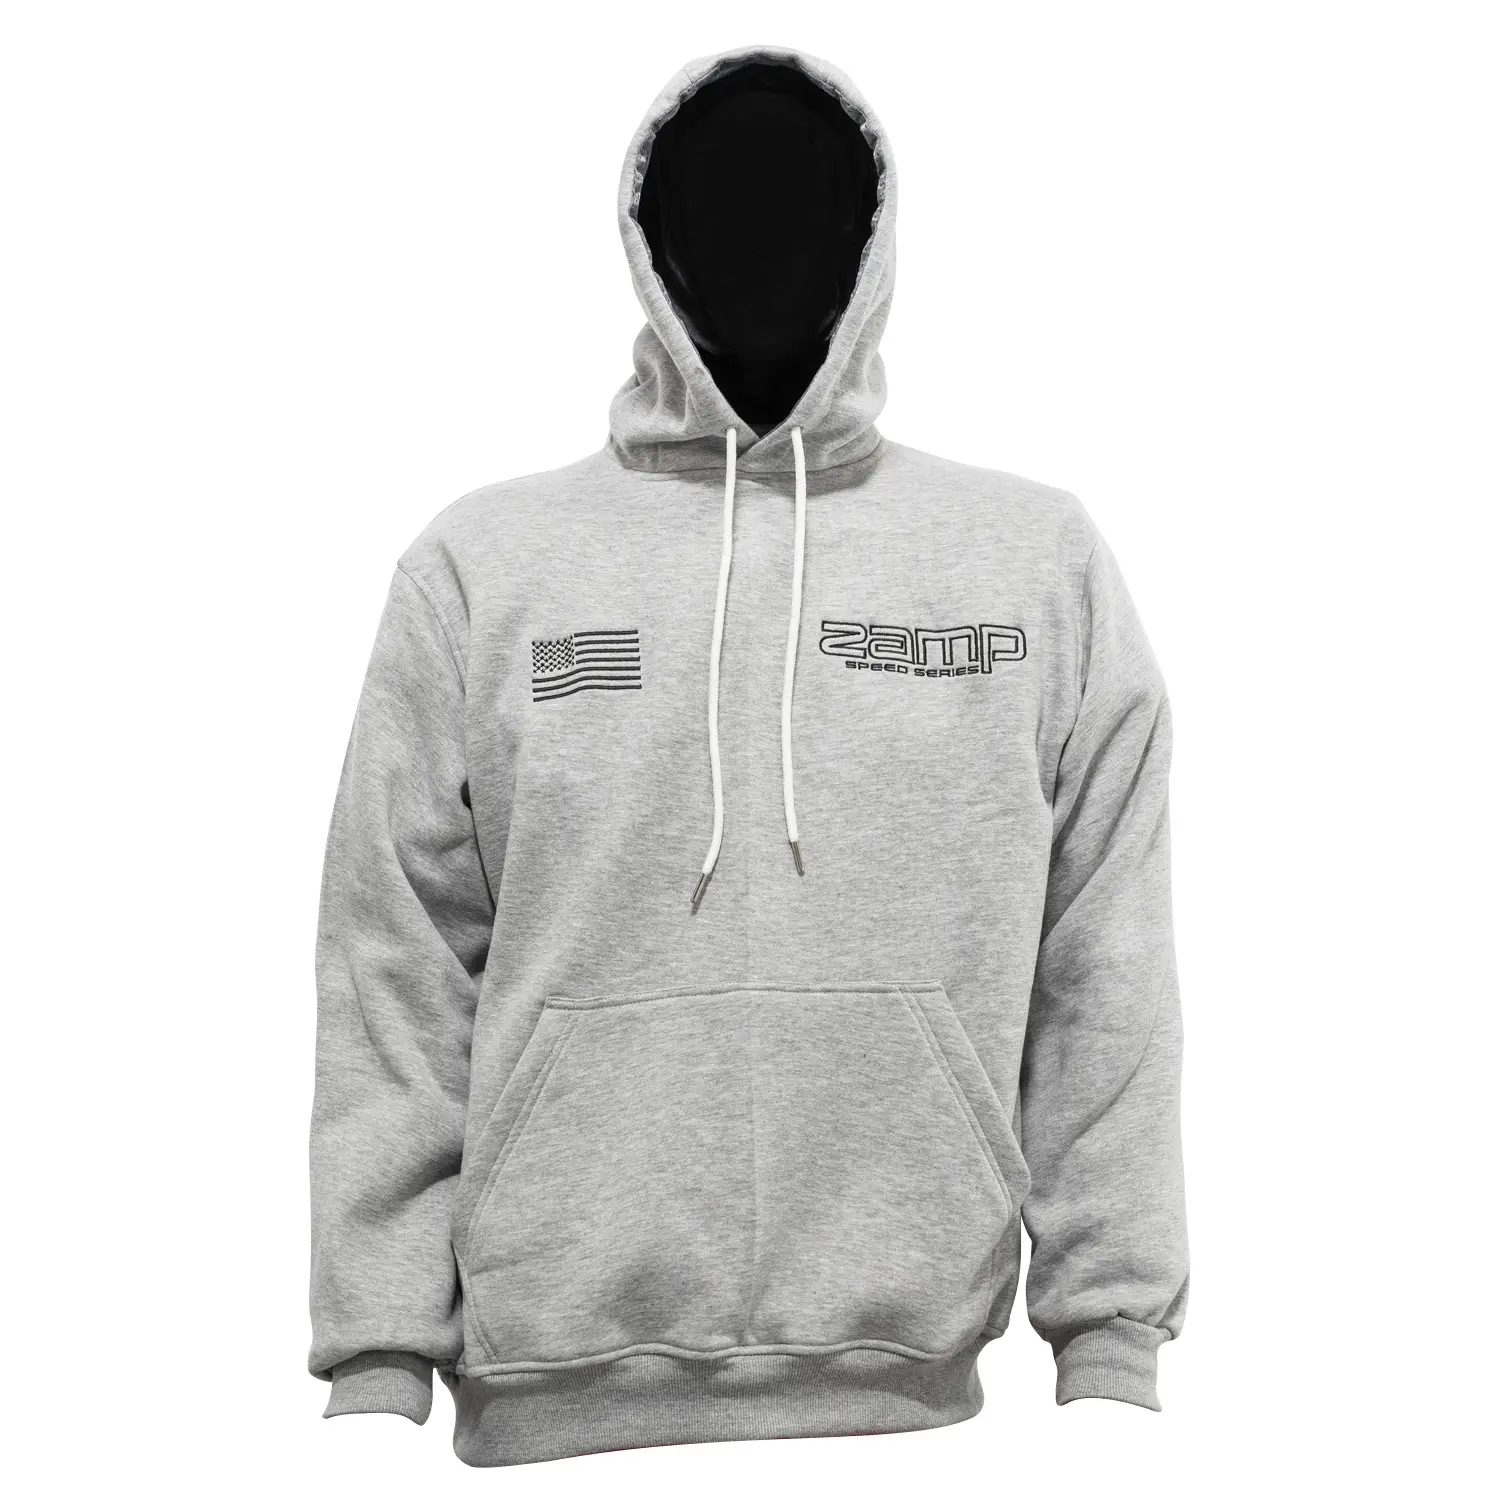 Zamp Racing Hooded Sweatshirt Gray